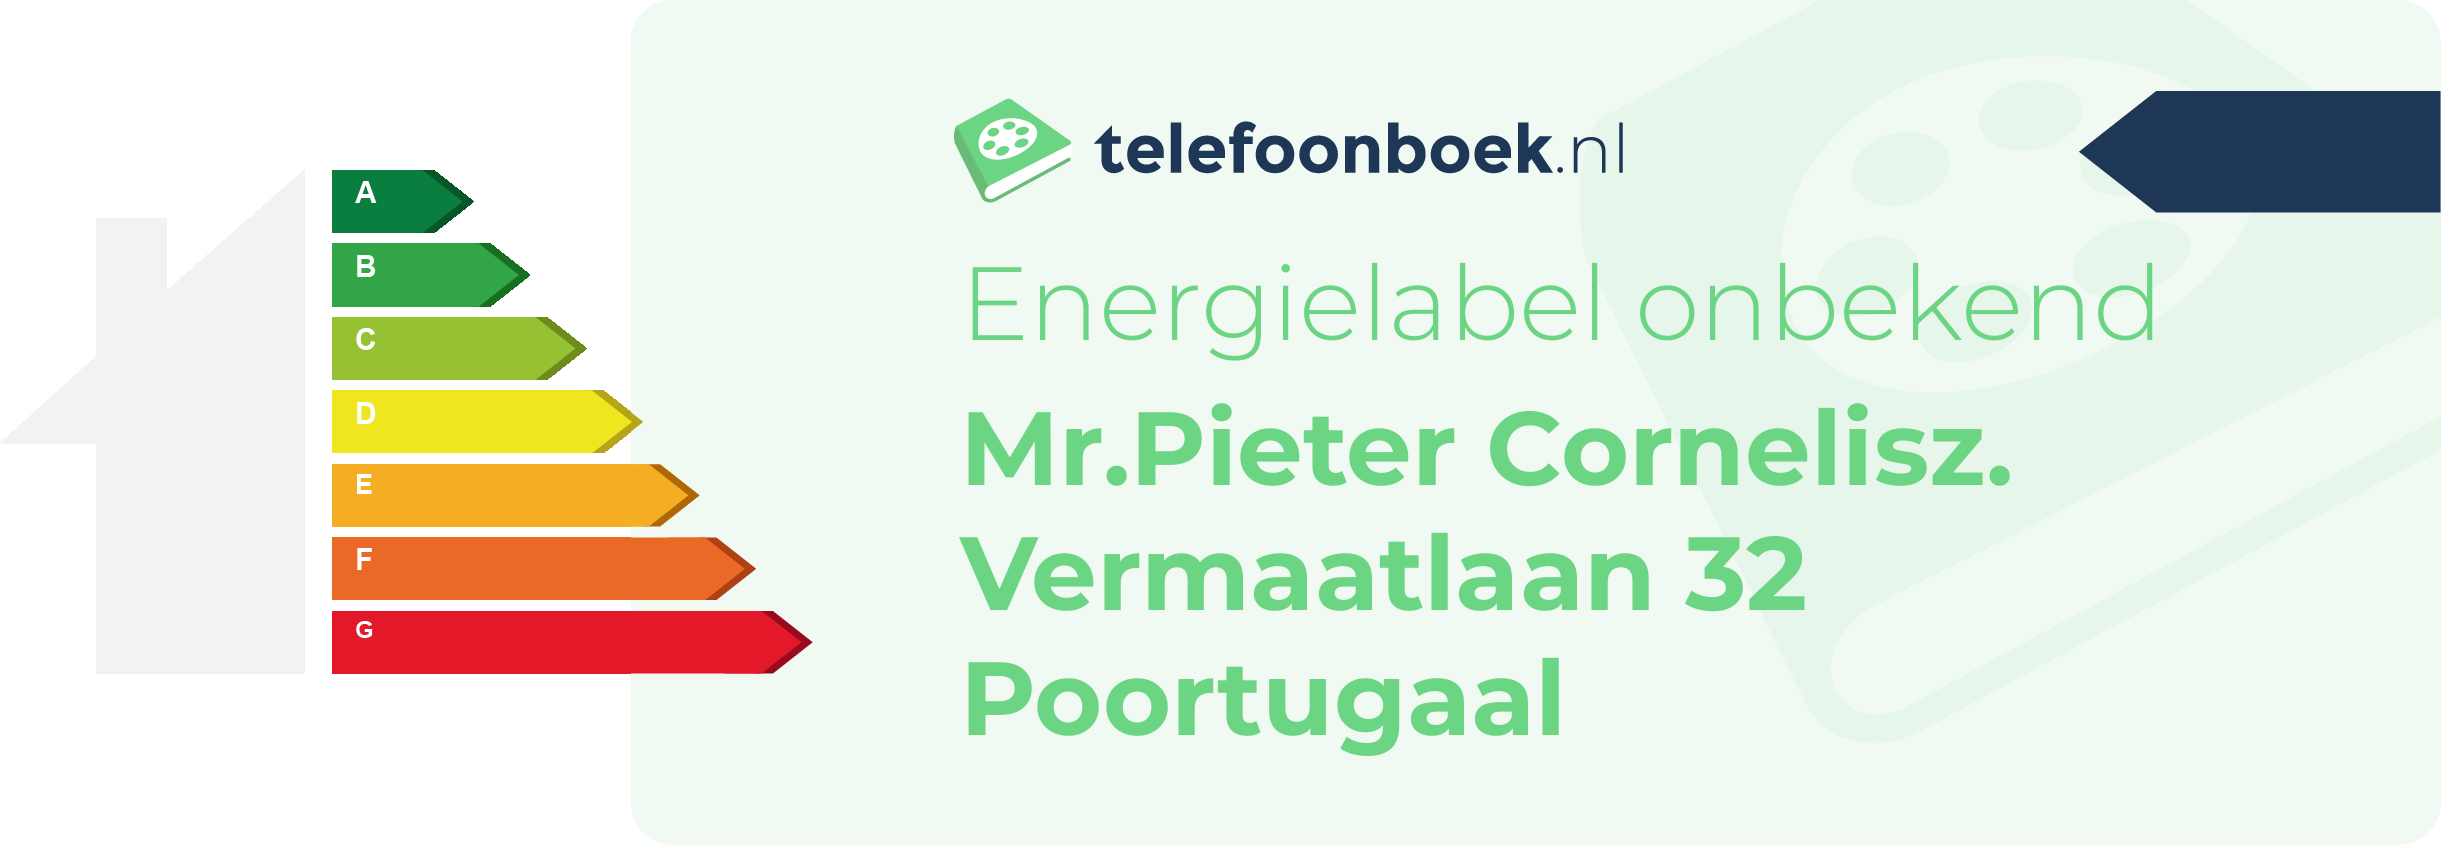 Energielabel Mr.Pieter Cornelisz. Vermaatlaan 32 Poortugaal